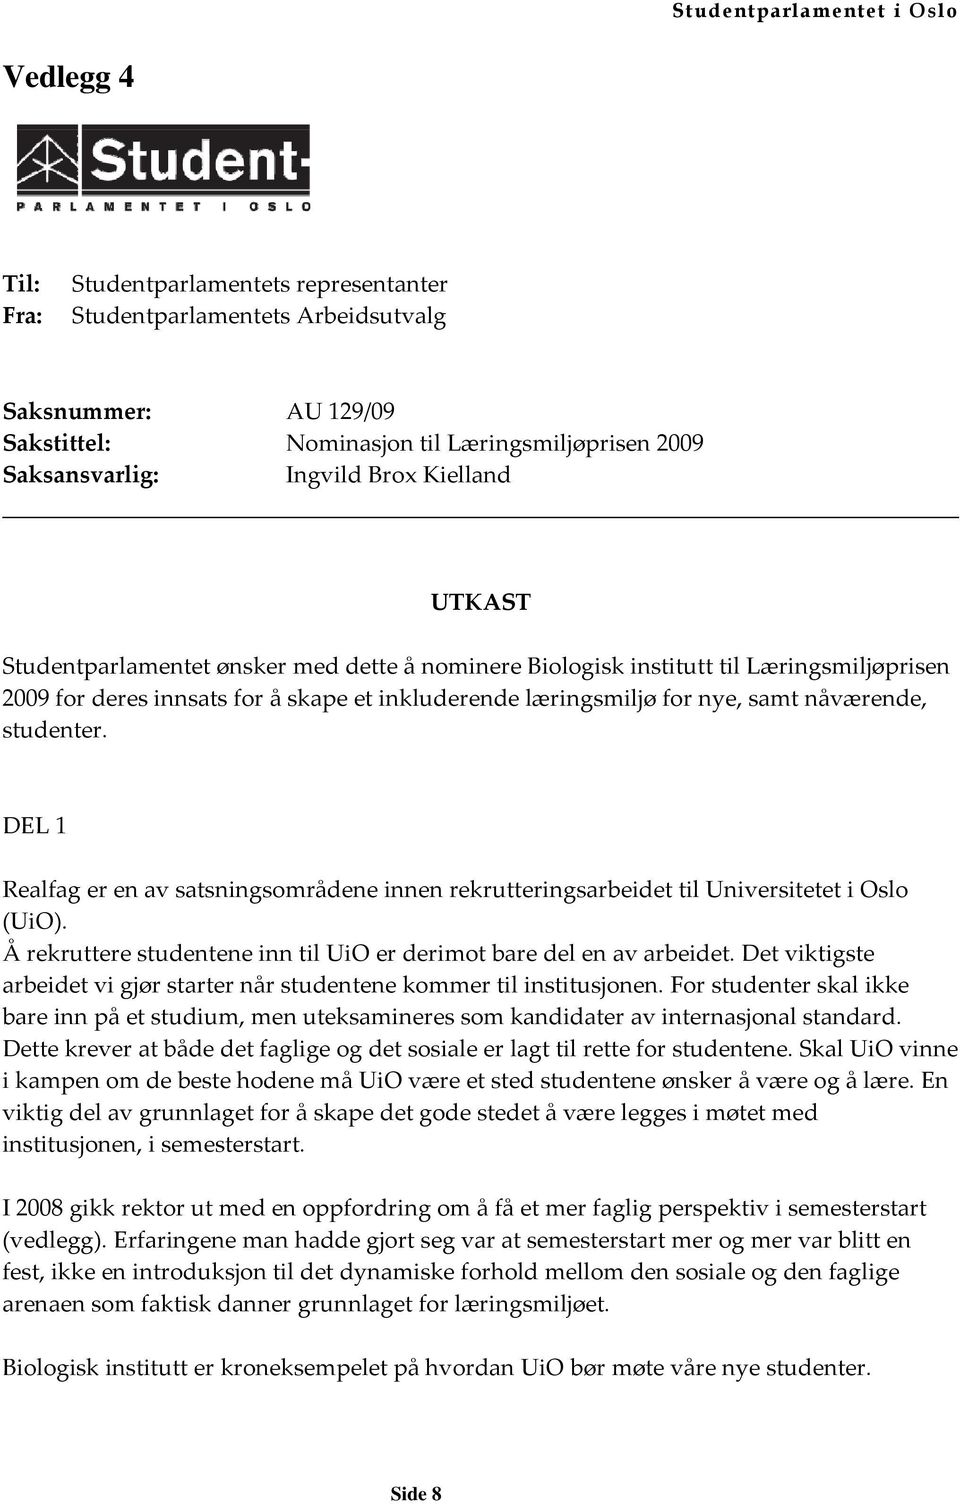 DEL 1 Realfag er en av satsningsområdene innen rekrutteringsarbeidet til Universitetet i Oslo (UiO). Å rekruttere studentene inn til UiO er derimot bare del en av arbeidet.